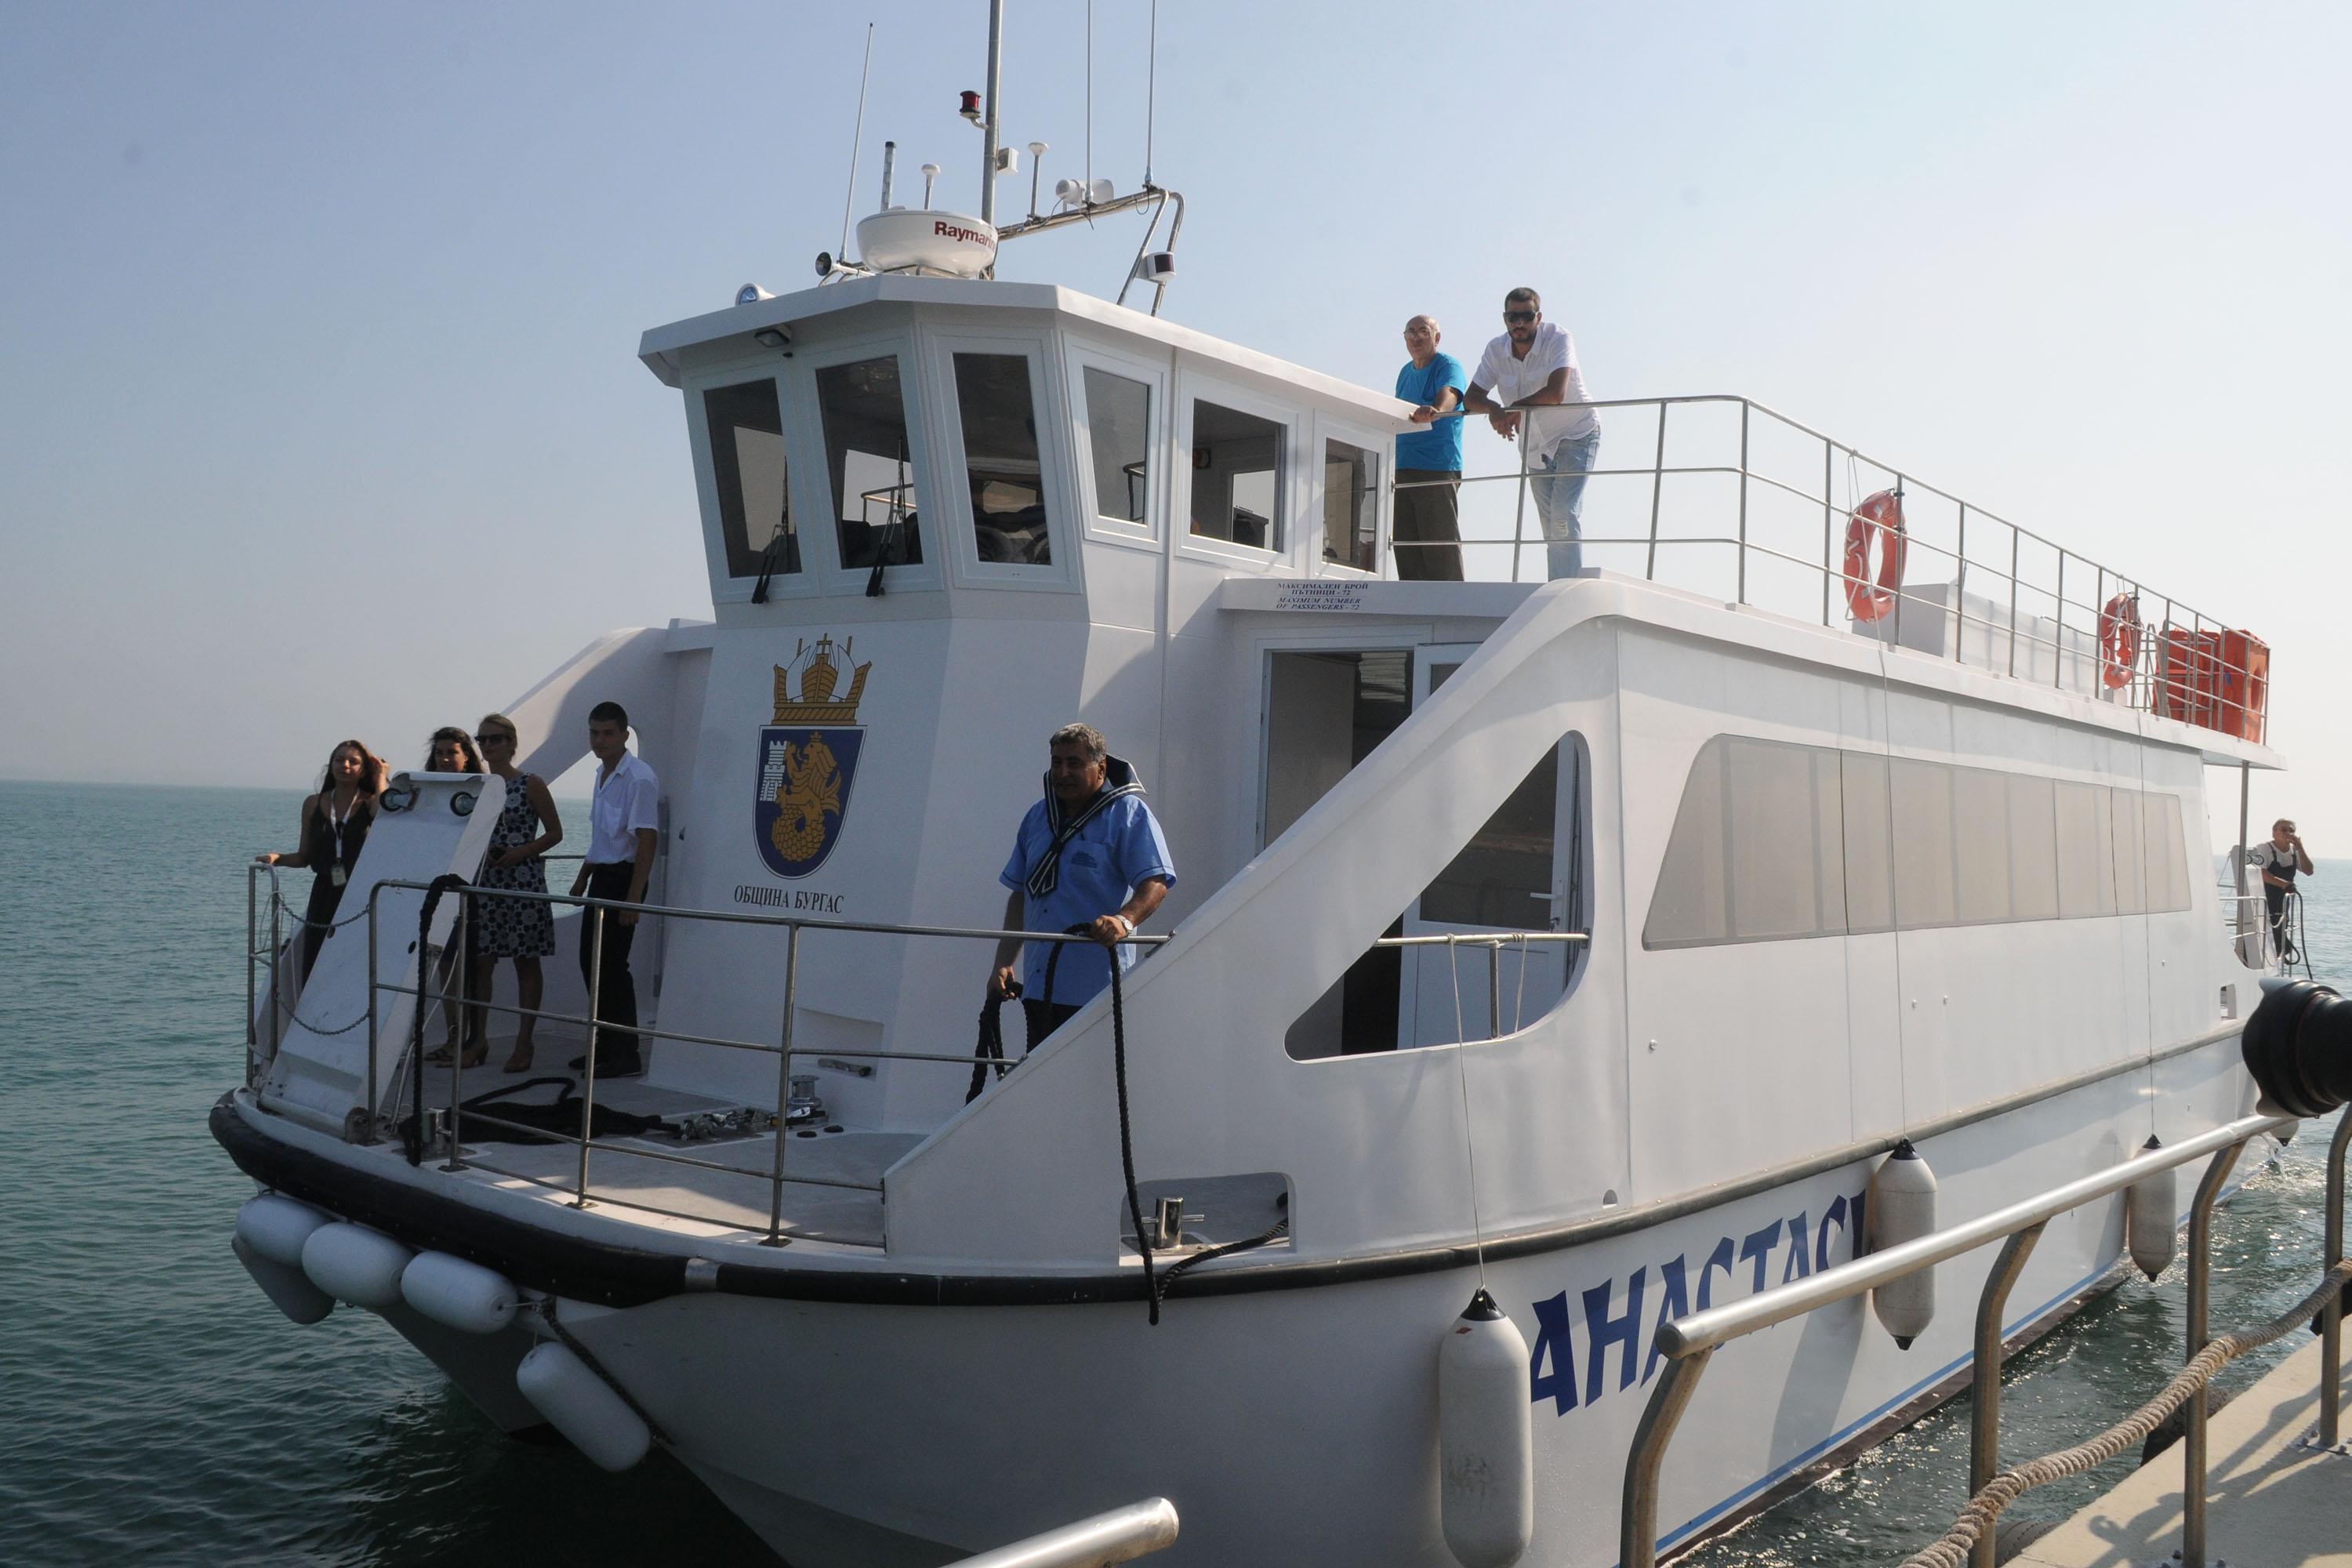 Общинският кораб ”Анастасия” очаква туристи на Яхтения порт (снимка архив)